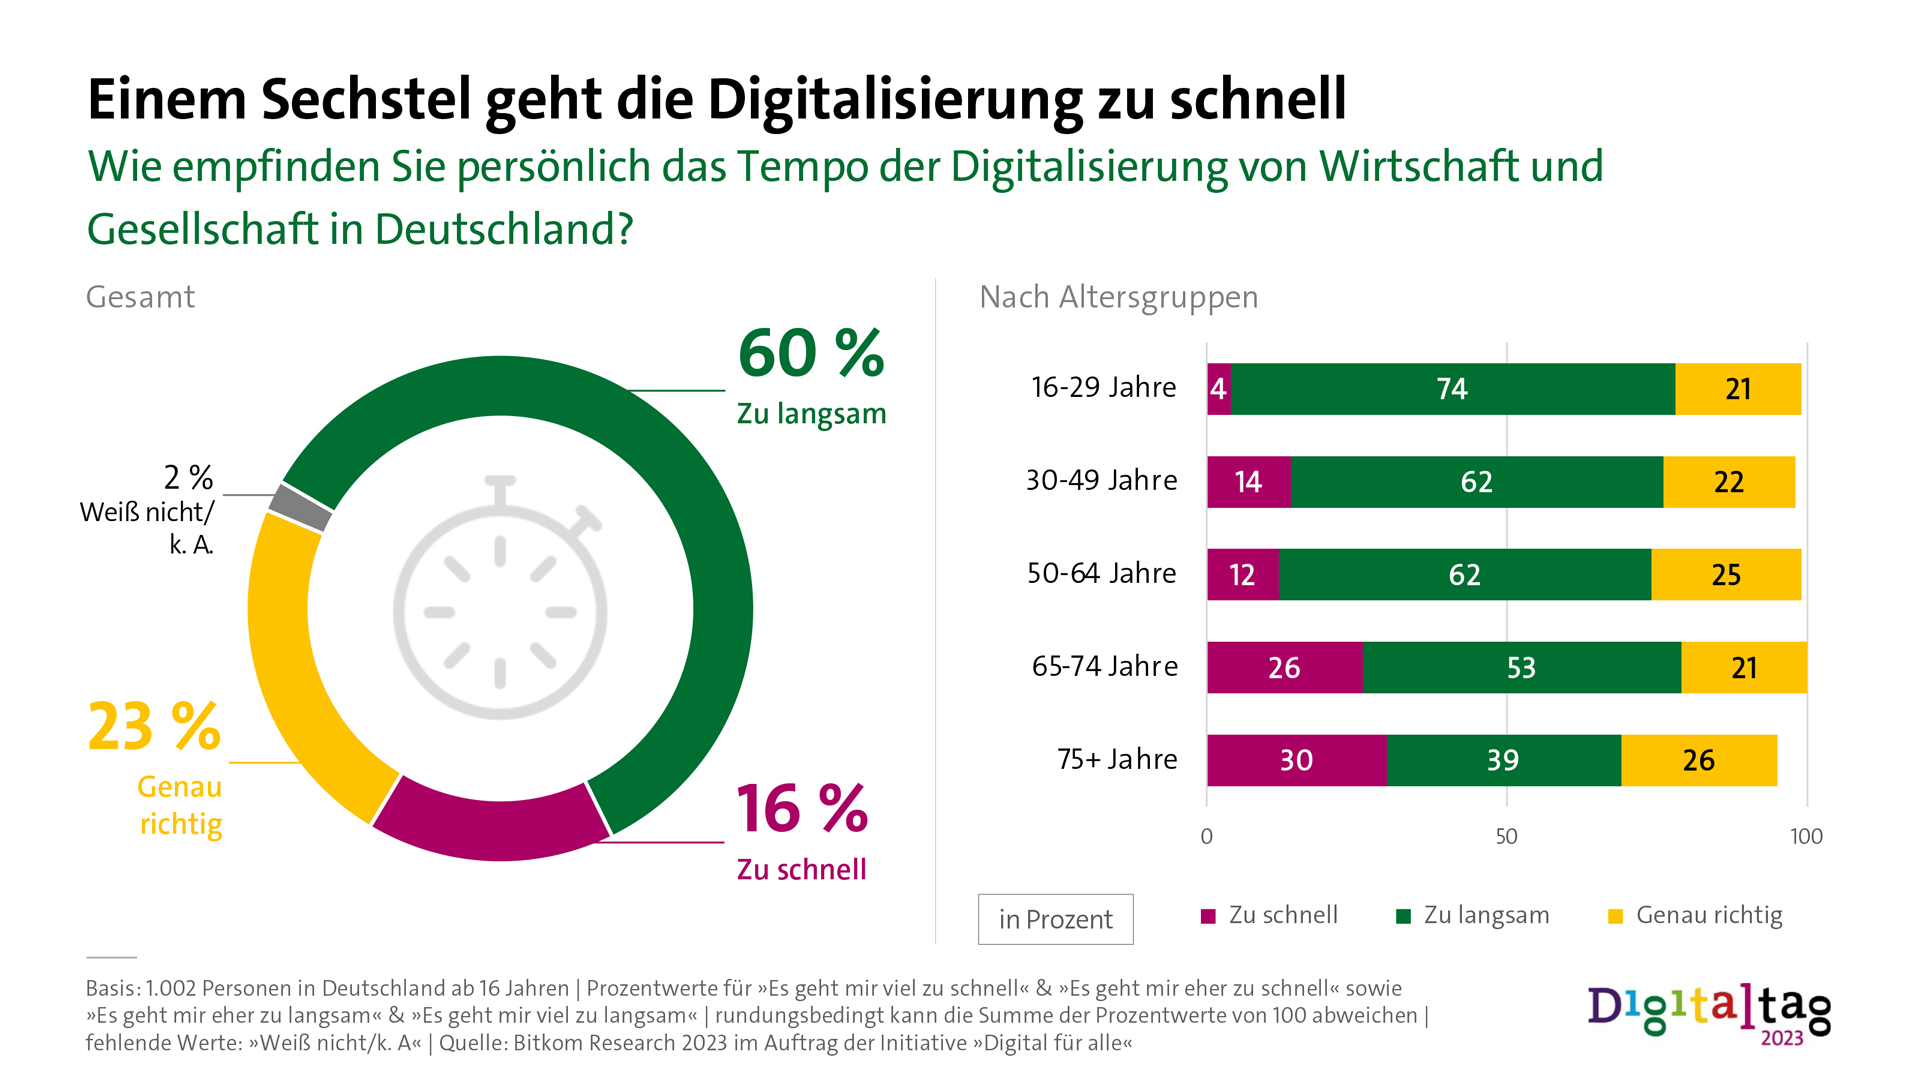 Infografik: Einem Sechstel geht die Digitalisierung zu schnell. Wie empfinden Sie persönlich das Tempo der Digitalisierung von Wirtschaft und Gesellschaft in Deutschland? 60%: Zu langsam. 16%: Zu schnell. 23%: Genau richtig. 2%: Weiß nicht/k. A..